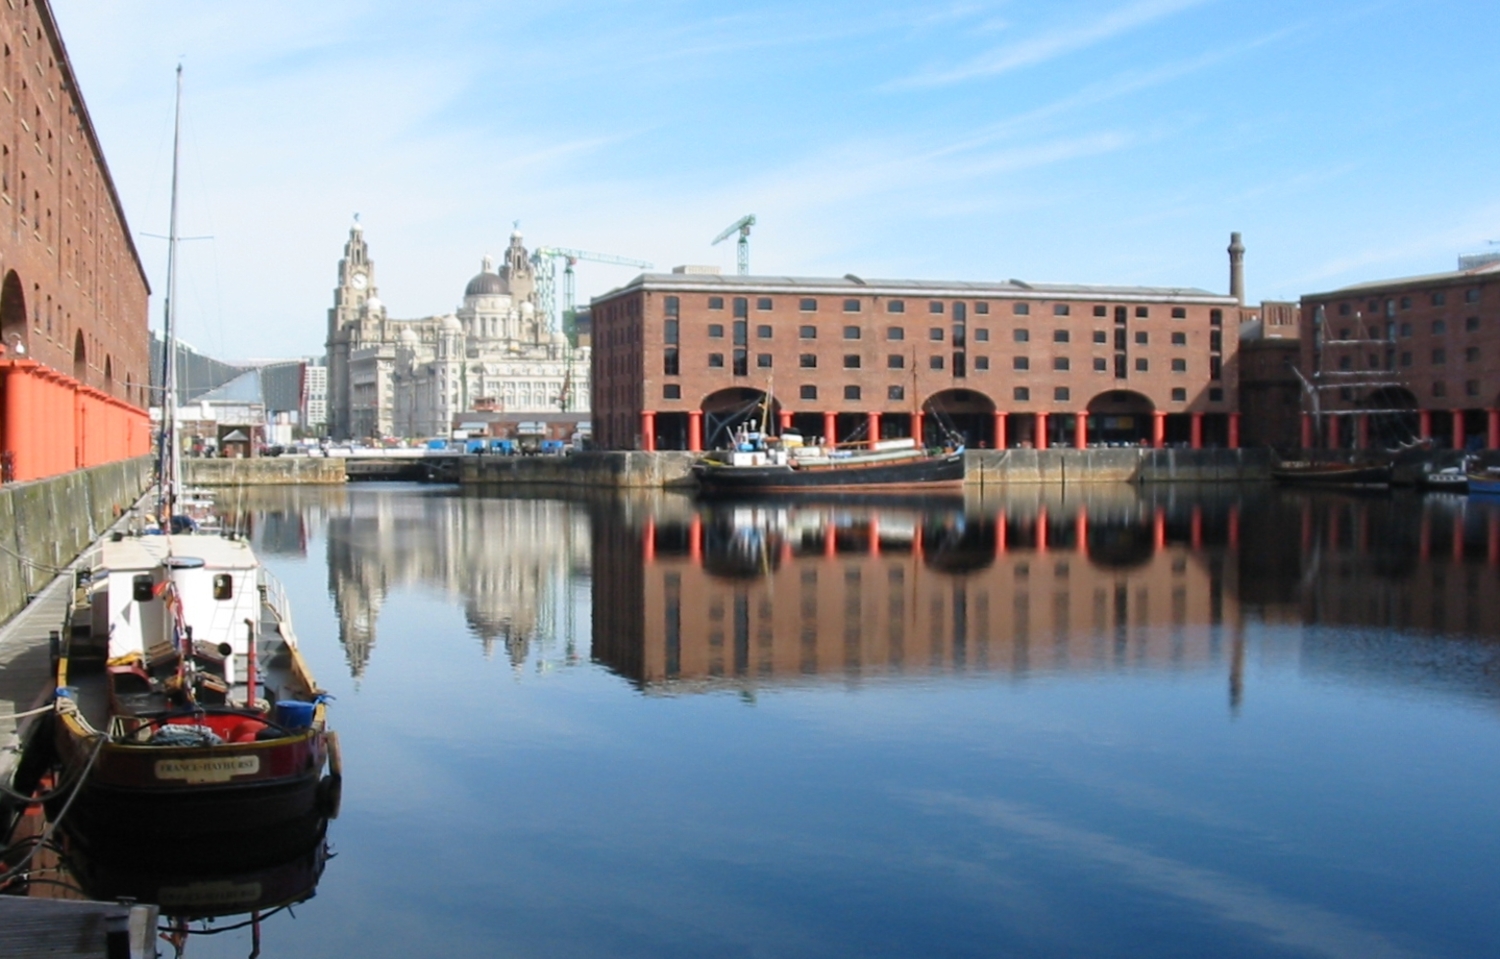 Albert Dock, Liverpool Waterfront